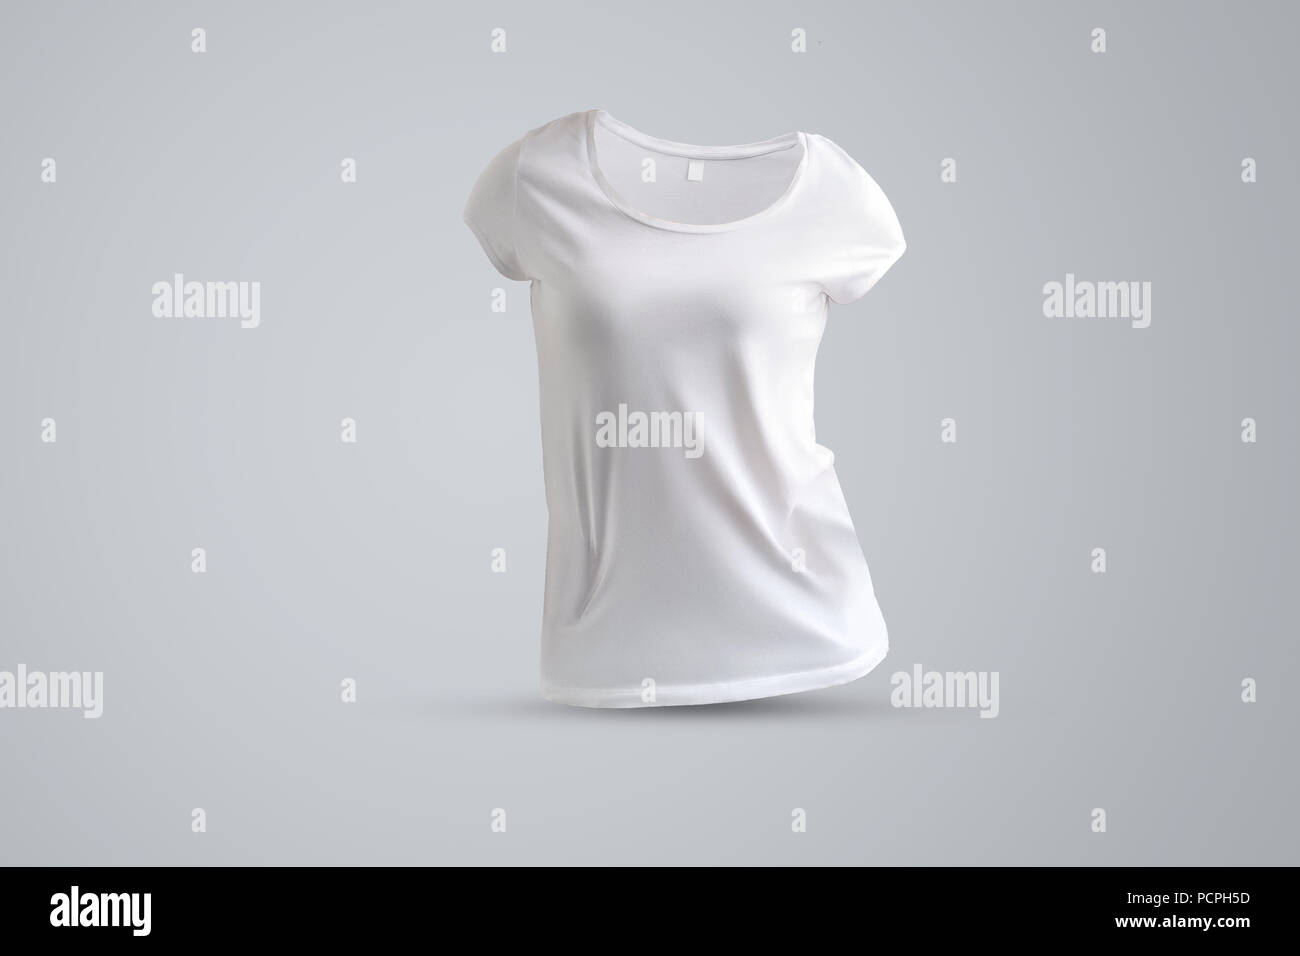 Universal mockup mit Form der weißen Frauen t-shirt ohne Körper auf dem grauen Hintergrund isoliert, Vorderansicht. Vorlage kann für Ihre sh verwendet werden. Stockfoto